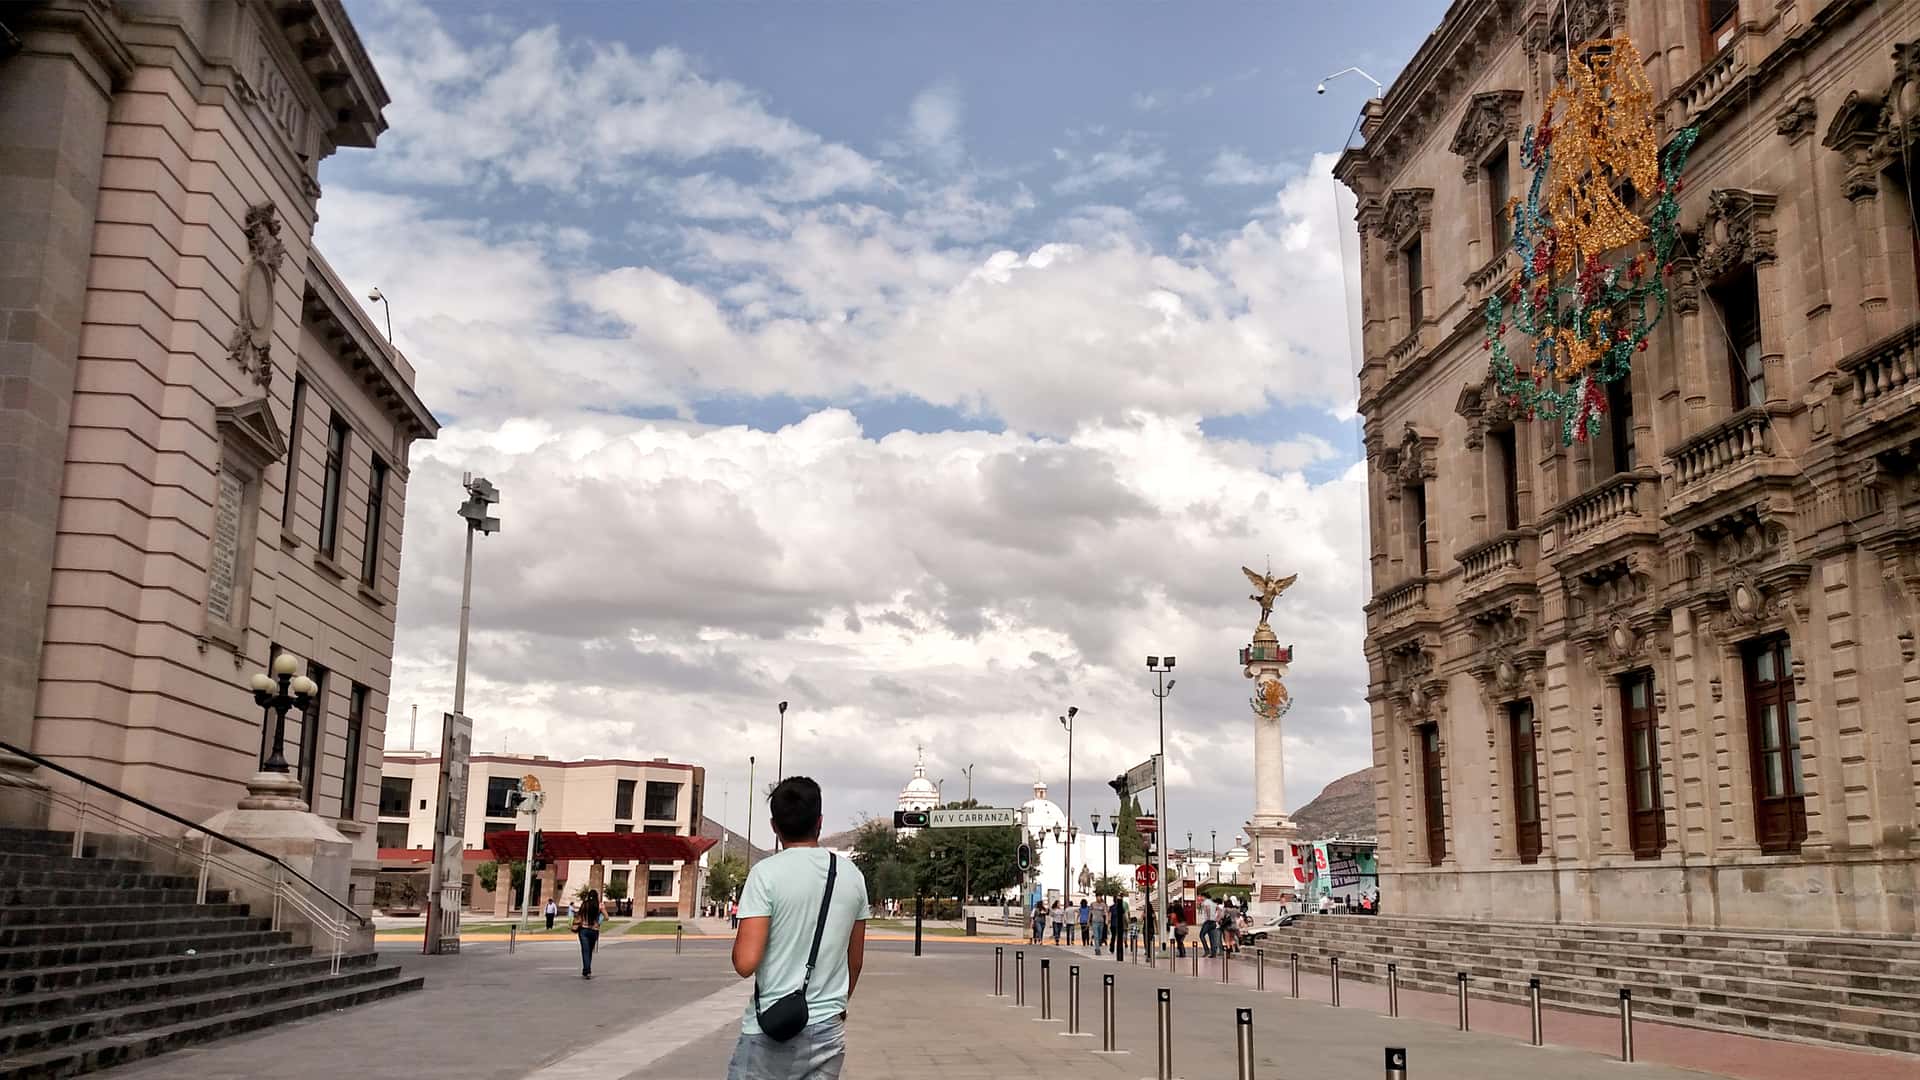 Turista en una calle de la ciudad de Chihuahua que representa las sucrusales de sky en esa localidad